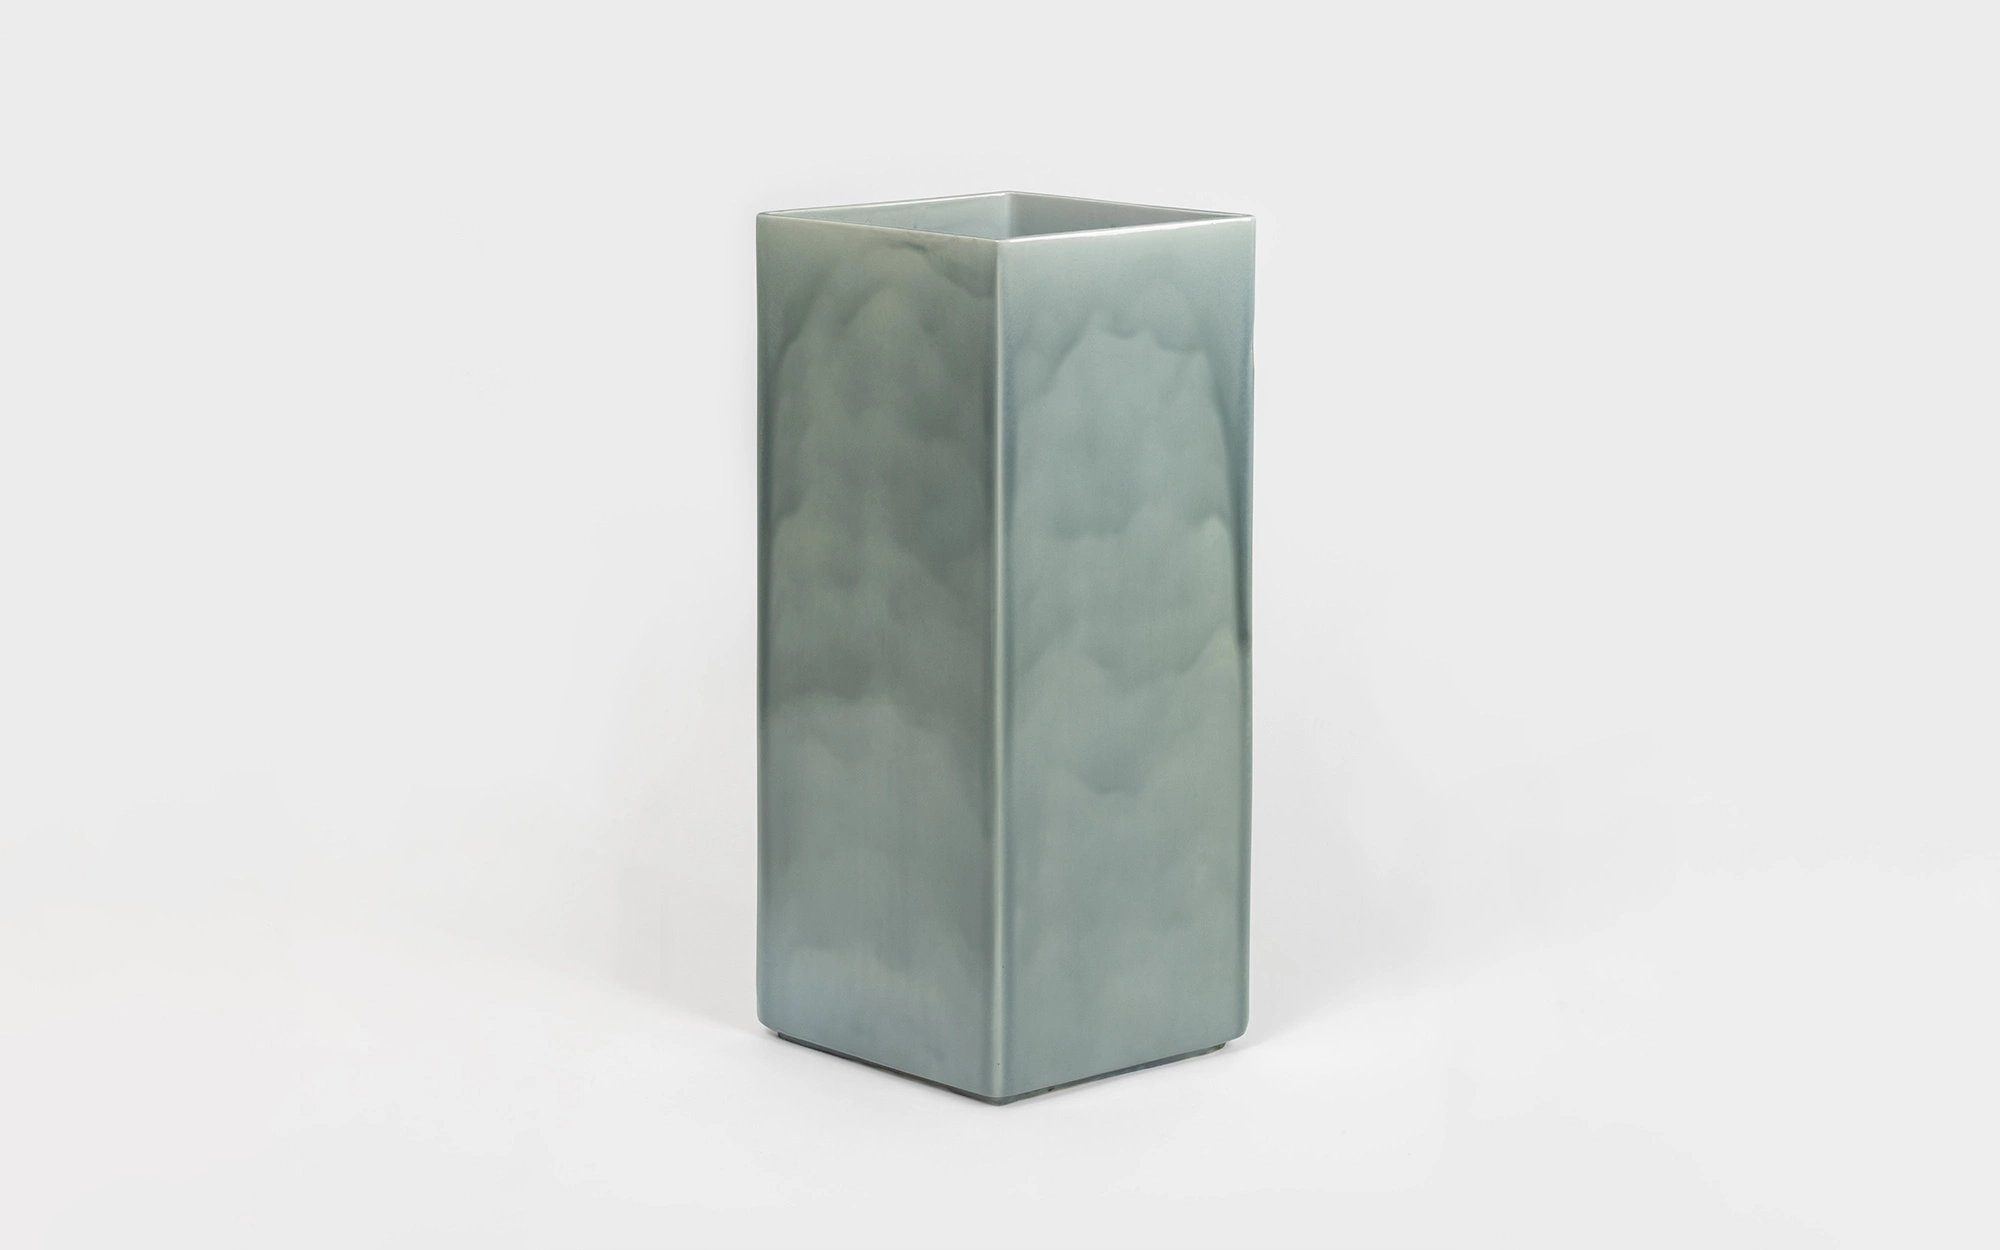 Vase Losange 84 blue - Ronan & Erwan Bouroullec - Stool - Galerie kreo